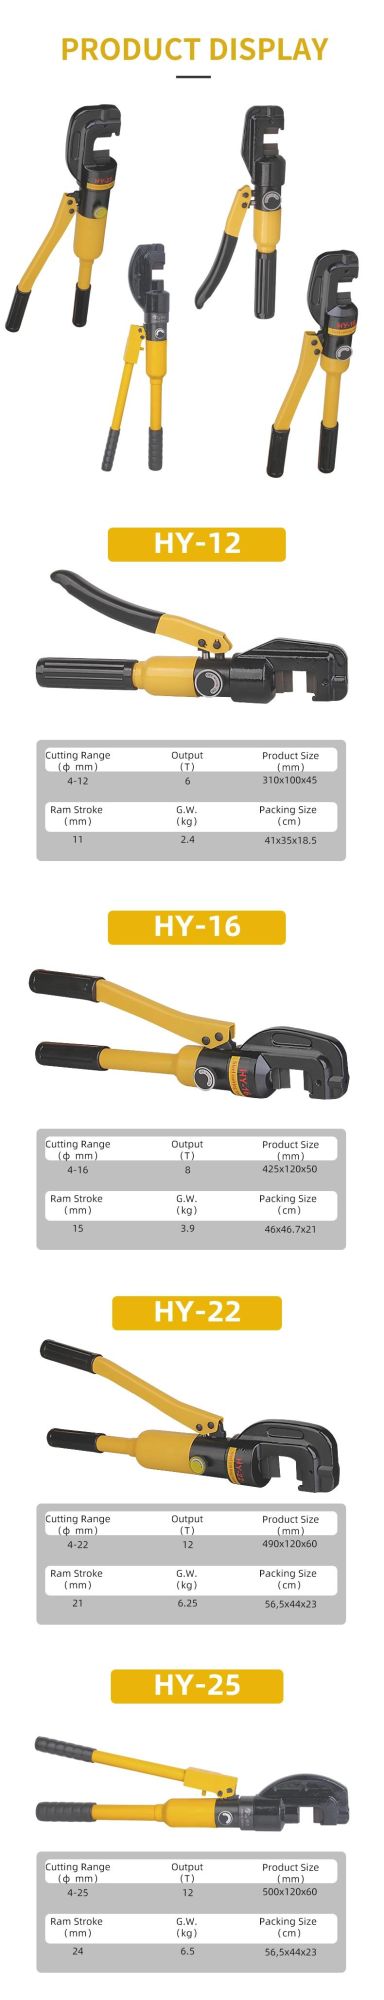 6t 12mm Hydraulic Rebar Cutter (HY-12)